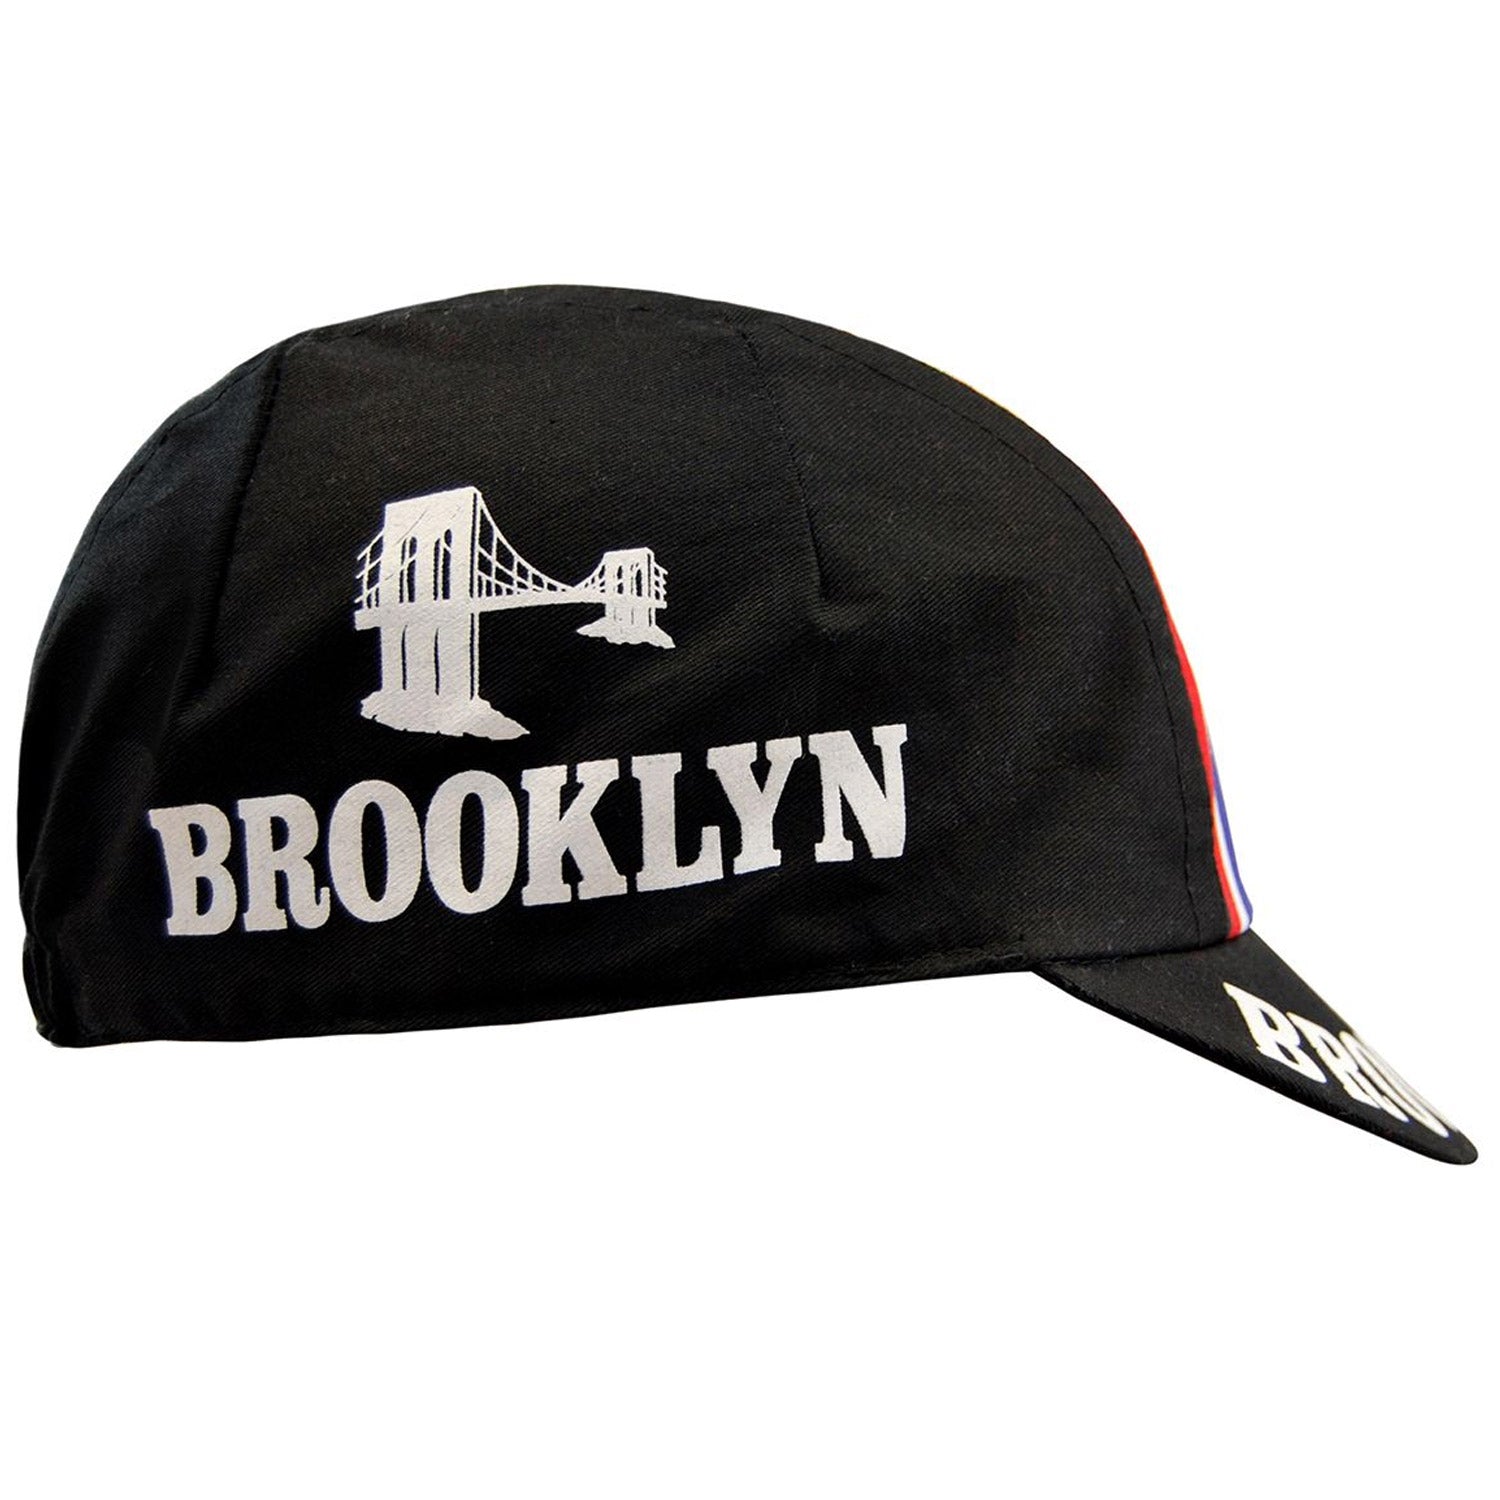 Gorra Headdy Brooklyn - Negro